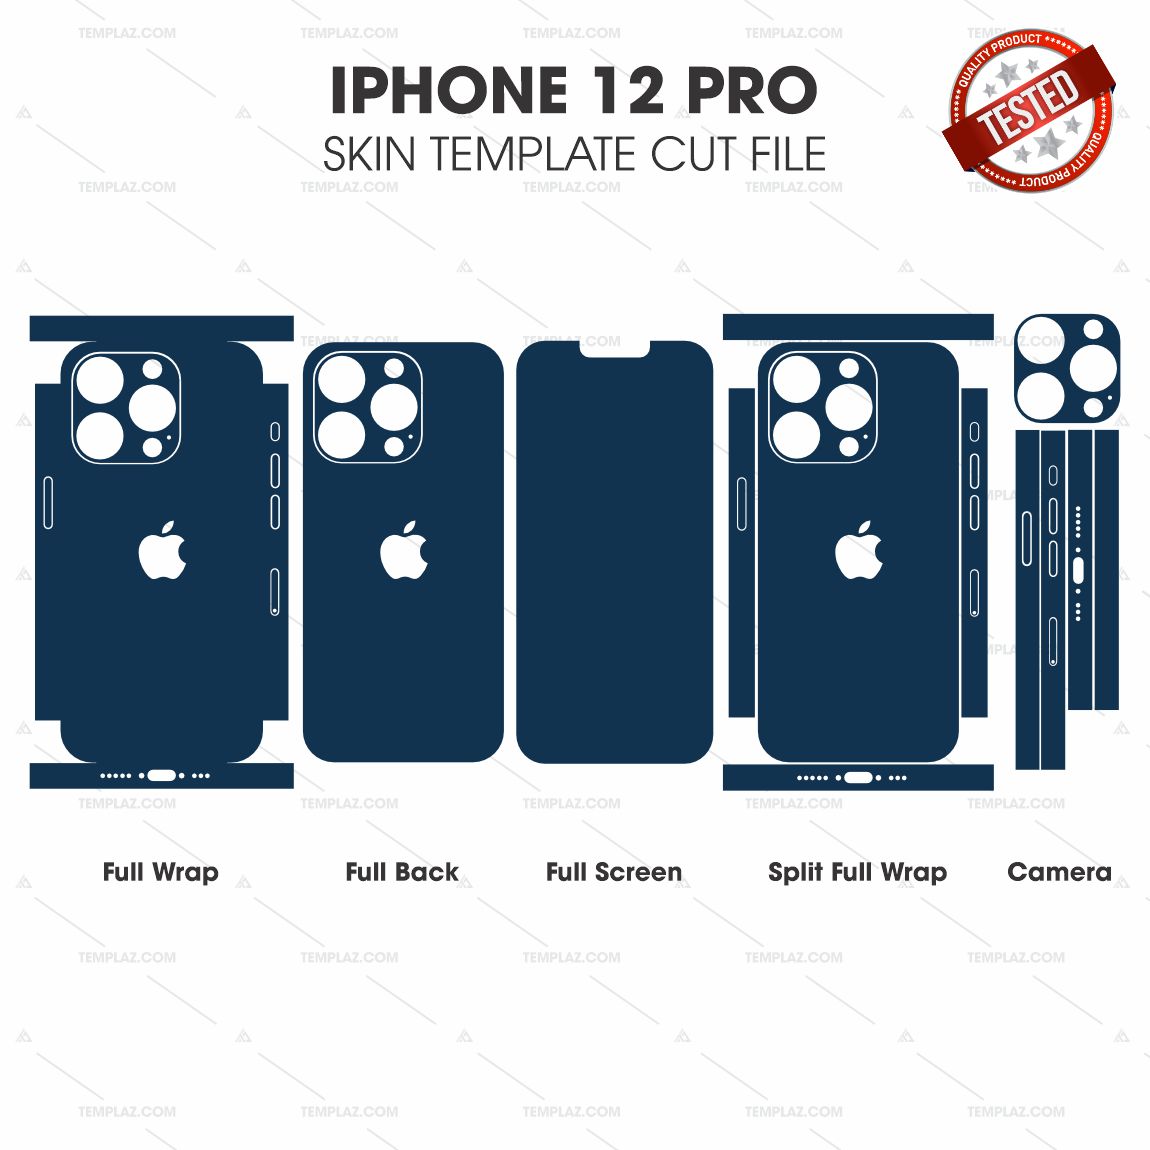 iPhone 12 Pro Skin Template Vector Cut File Bundle